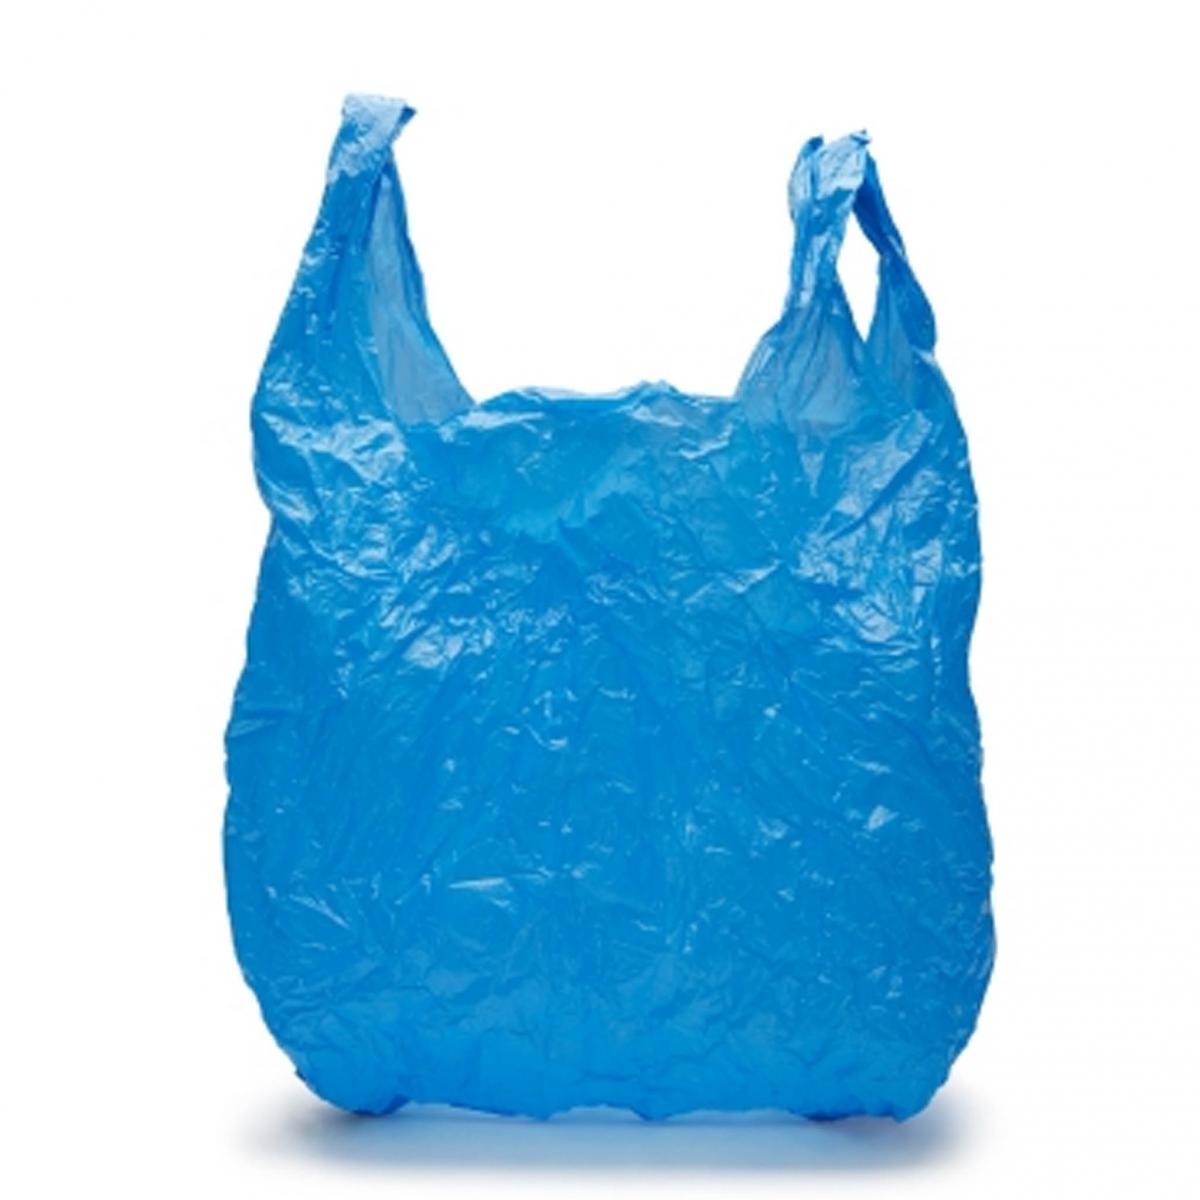 Datos curiosos sobre las bolsas de plástico